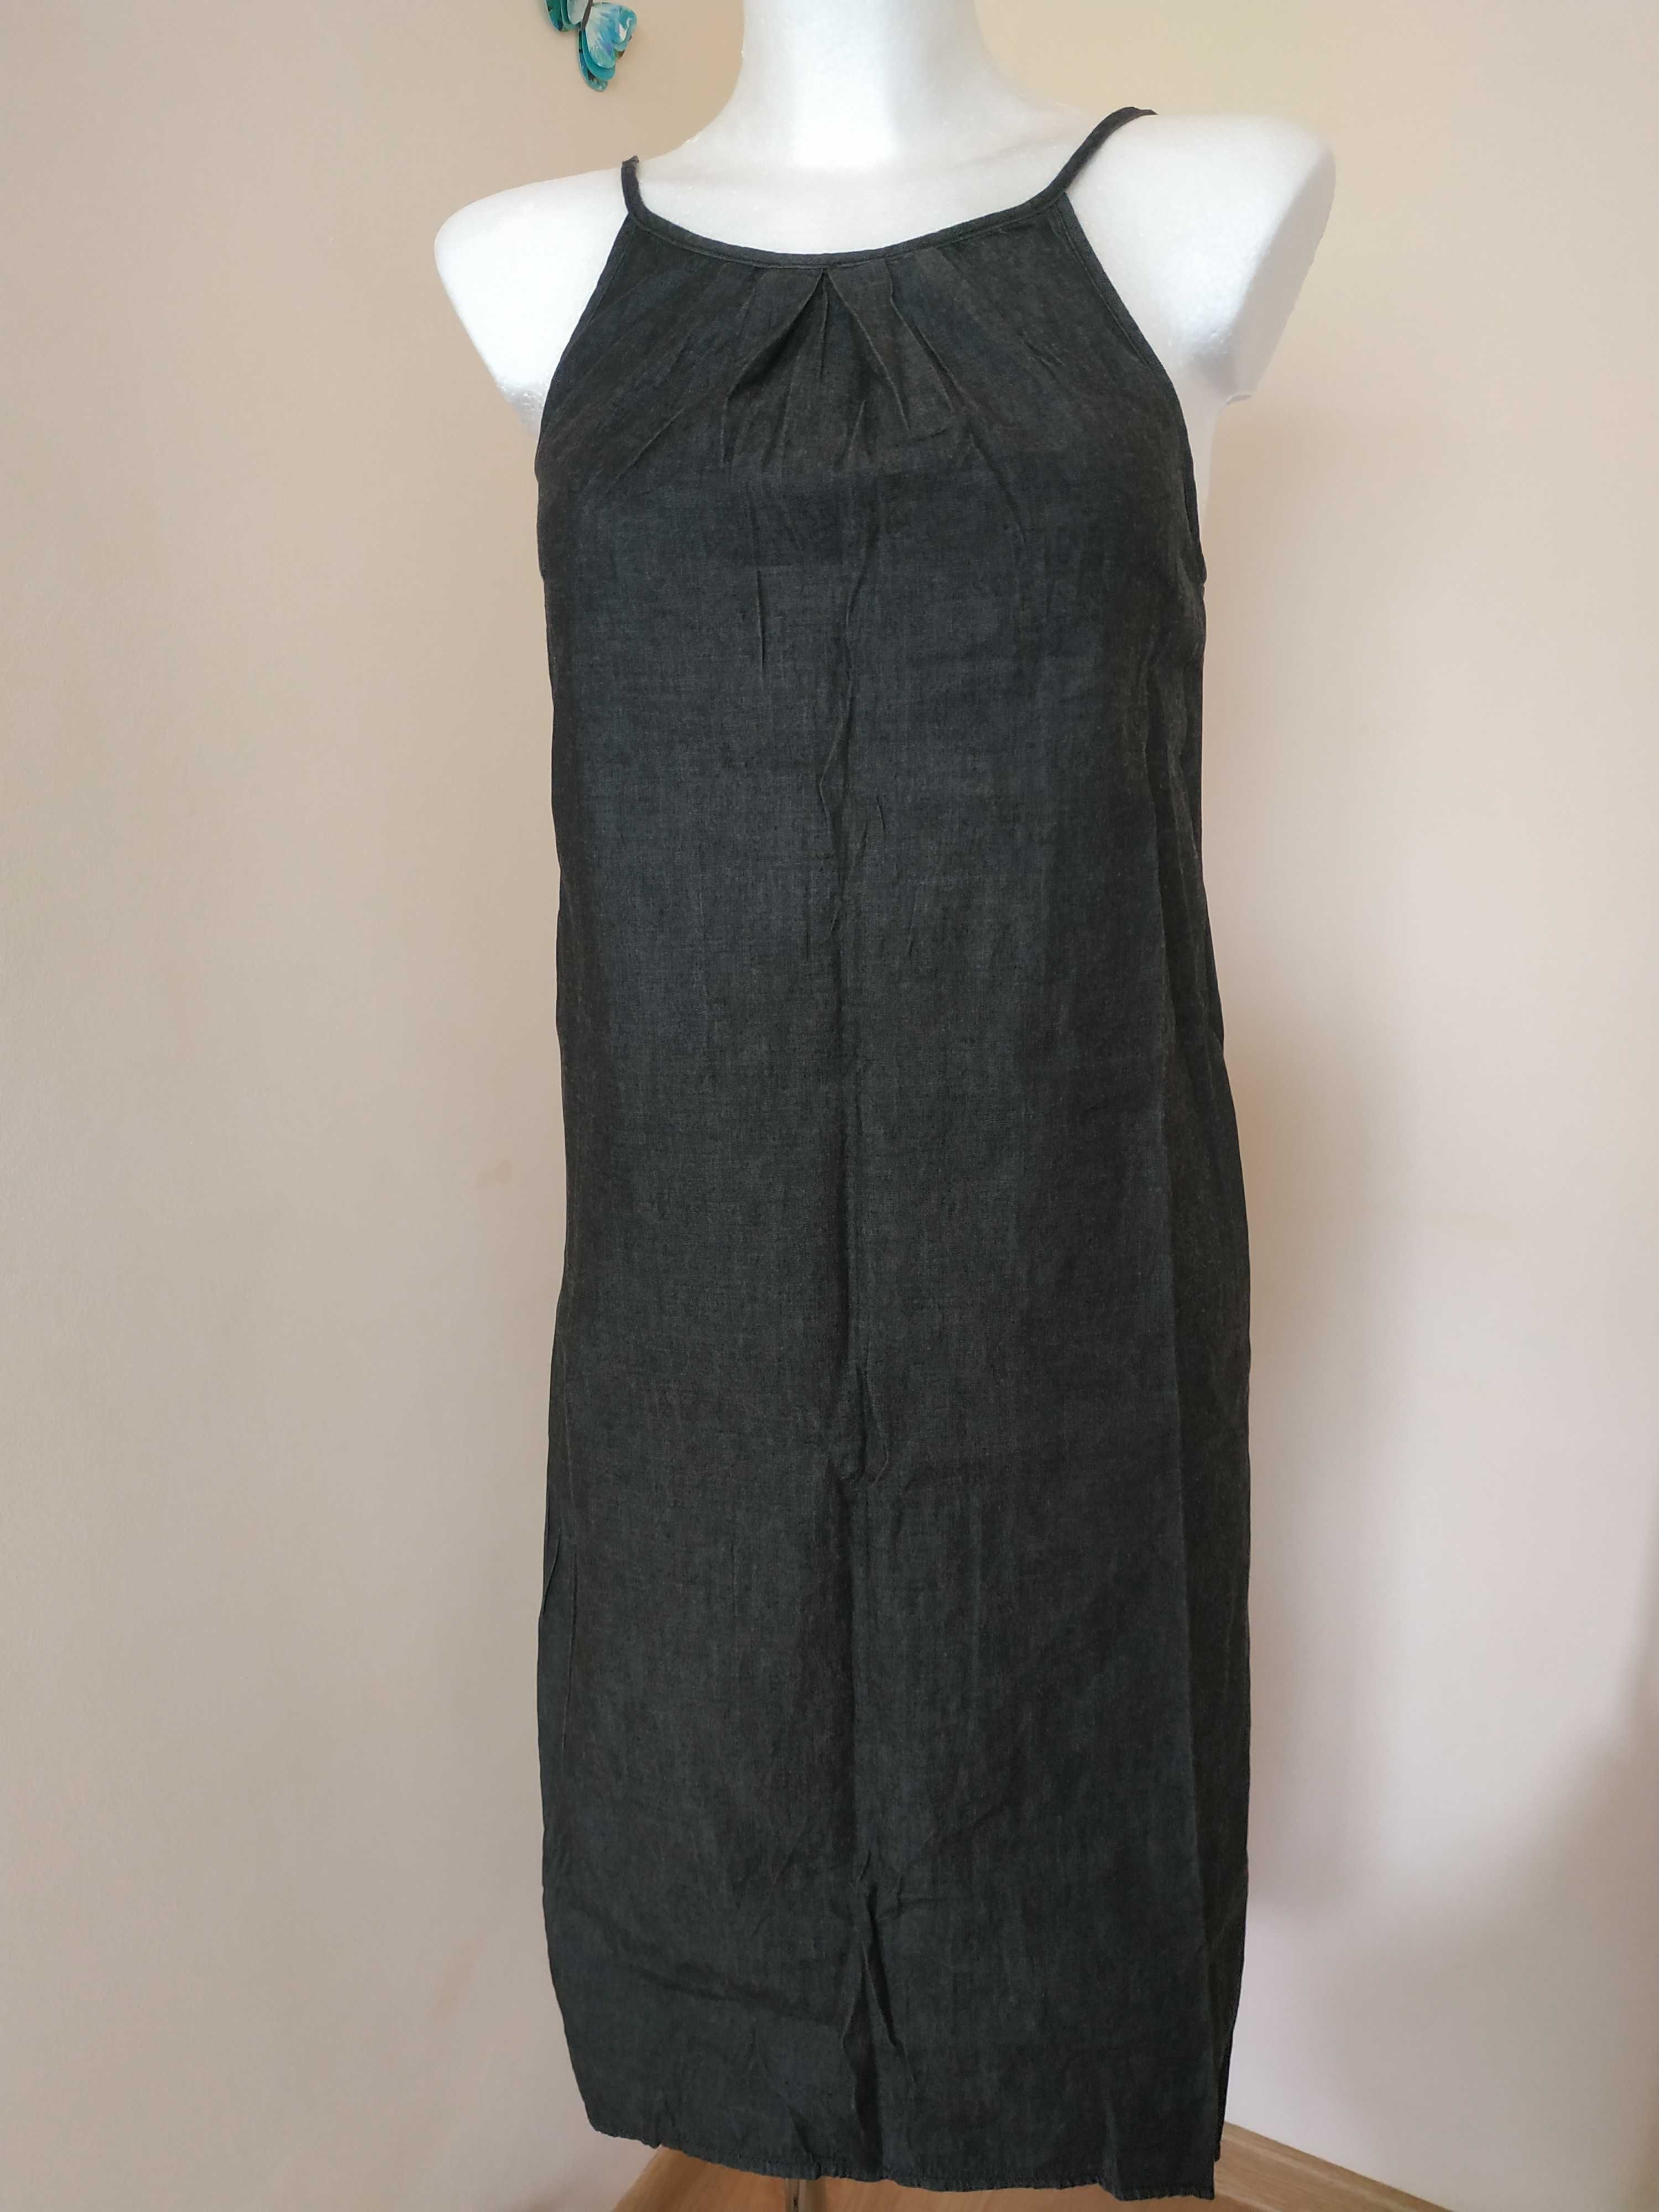 Czarna długa sukienka na ramiączkach cienki dżins 34/36